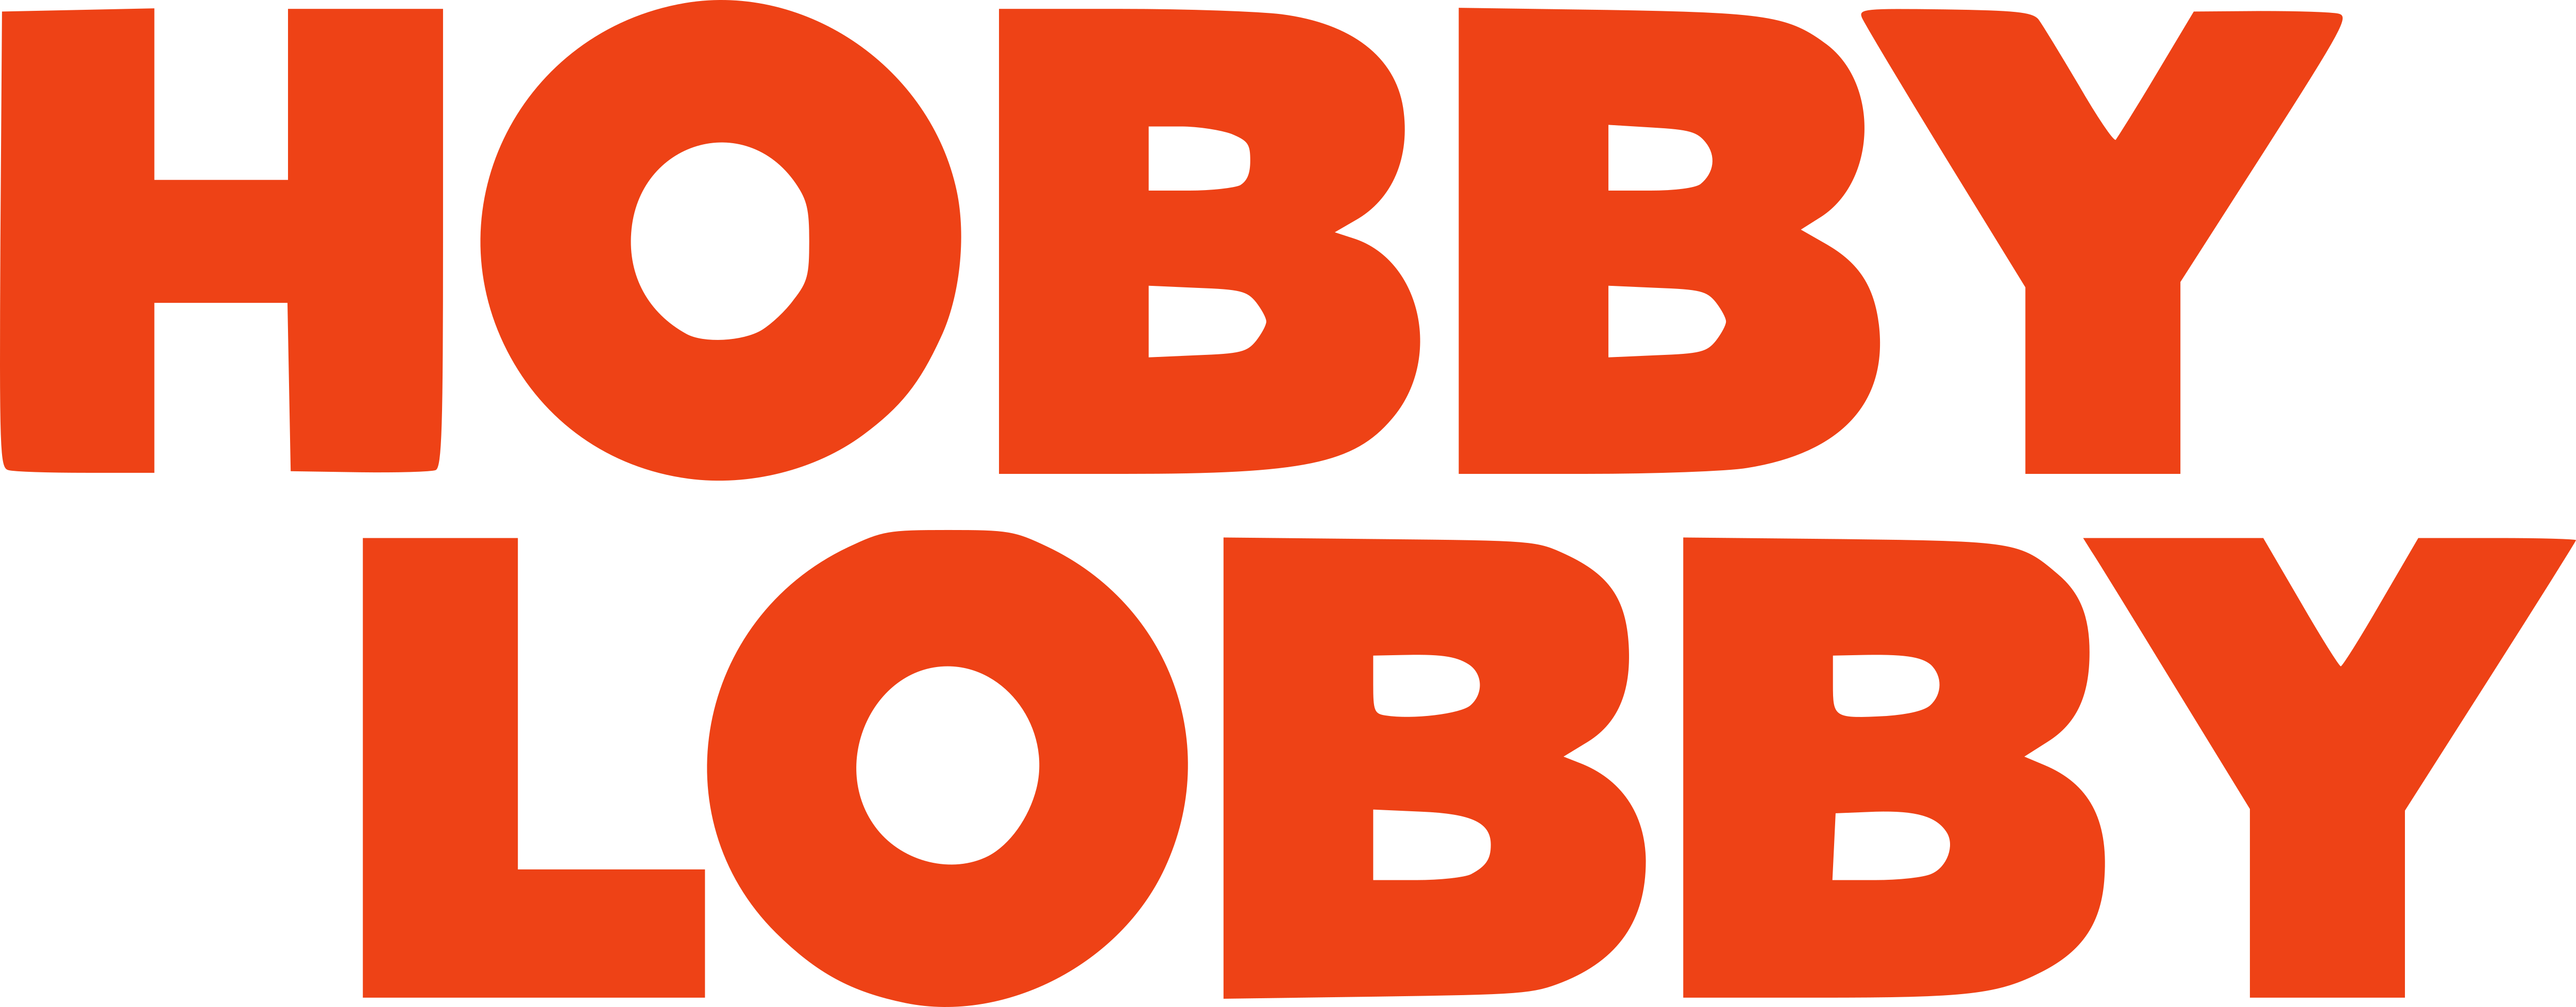 Hobby_Lobby_Stores_Logo